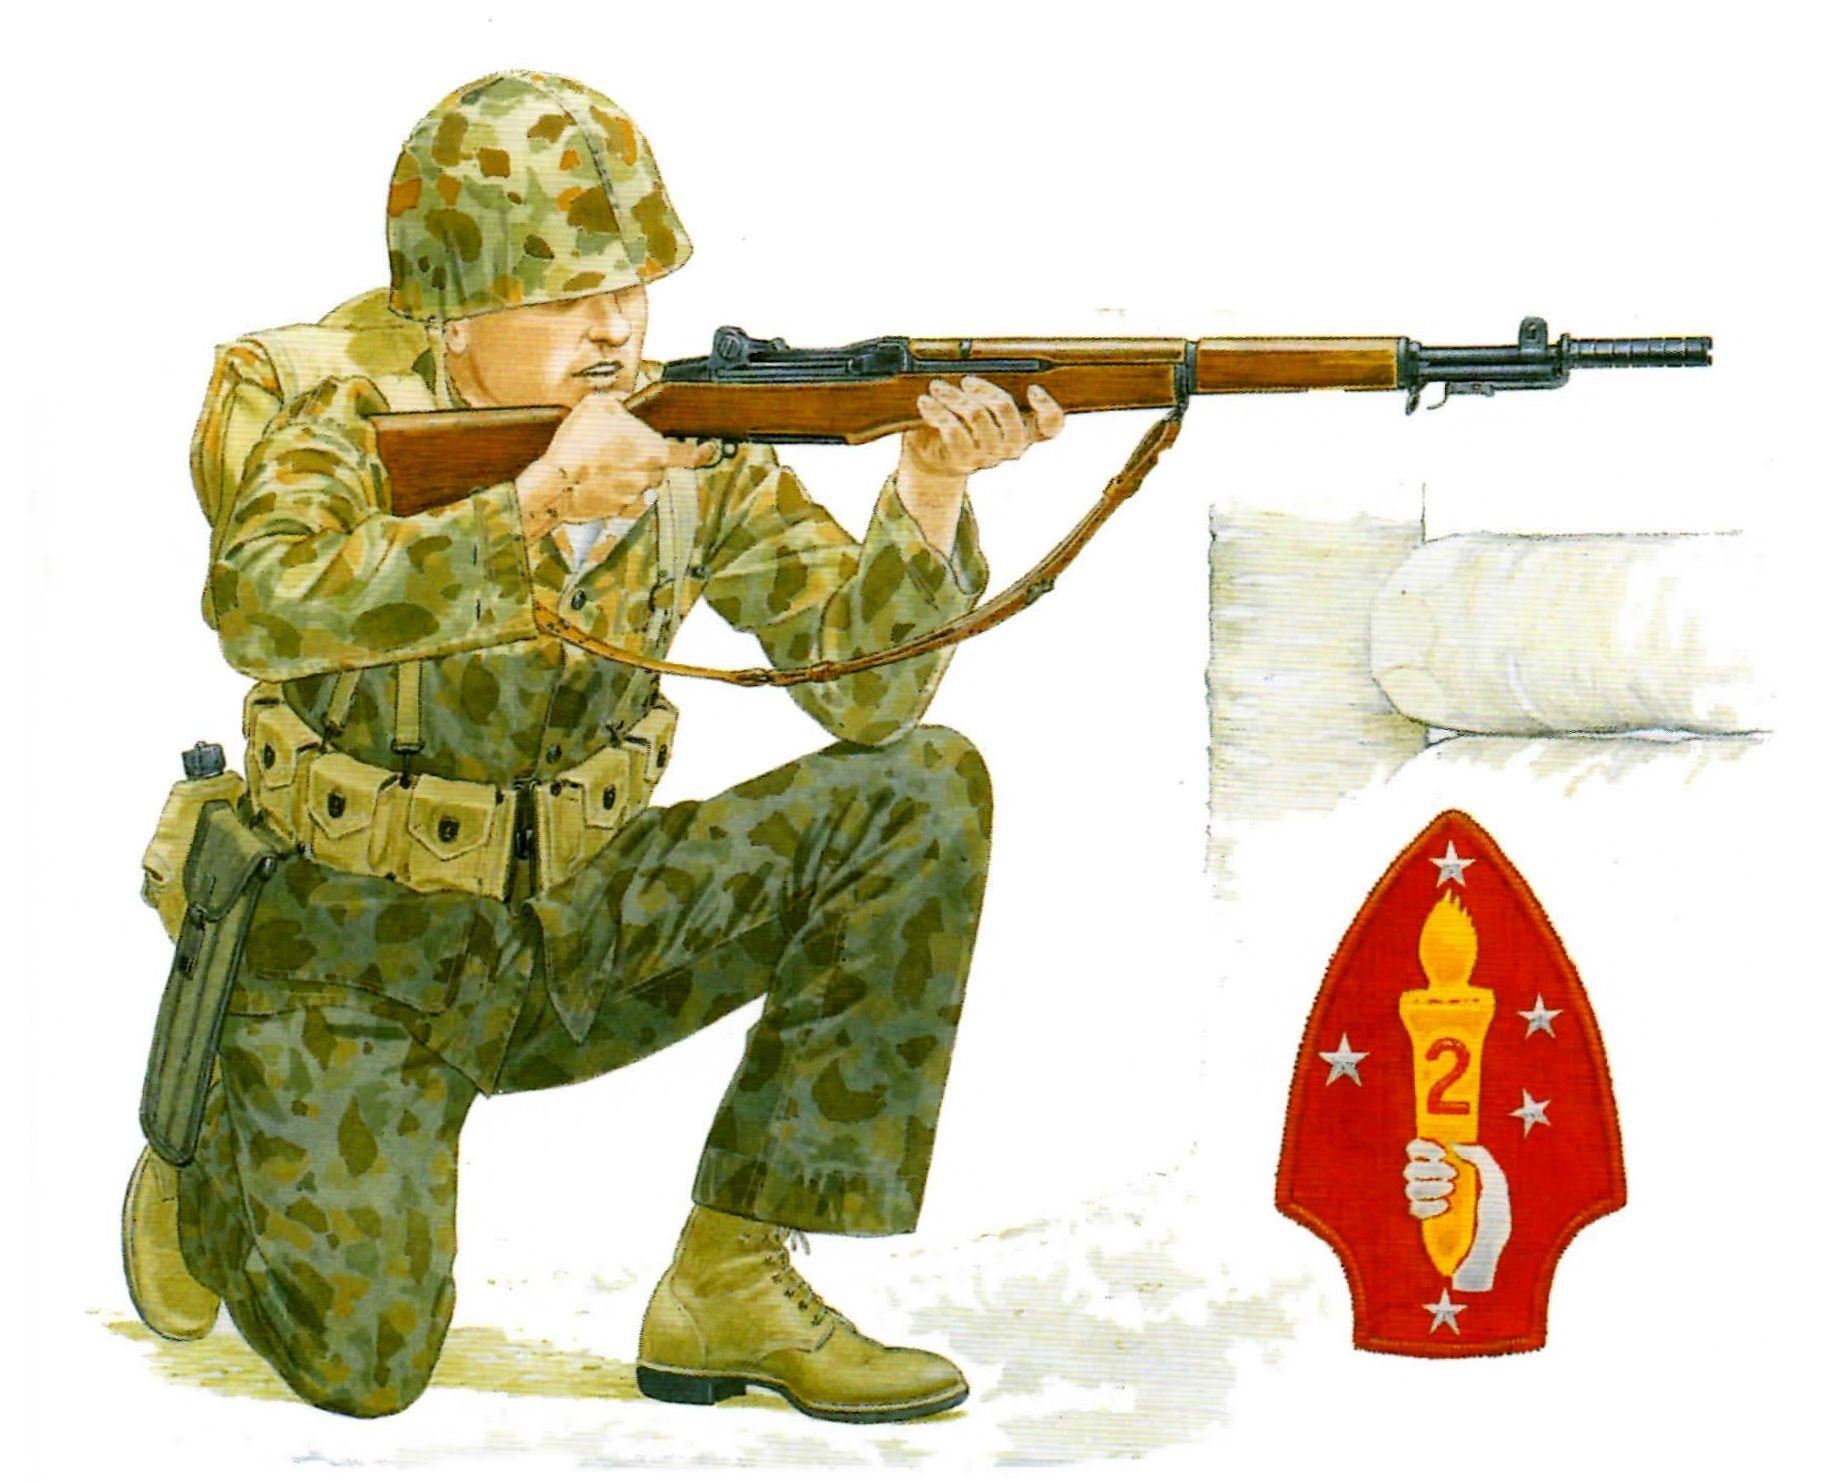 Пехотинца 6 букв. Солдат морской пехоты США ww2. Морская пехота США во второй мировой. Форма морской пехоты США второй мировой. Картинки на военную тематику.